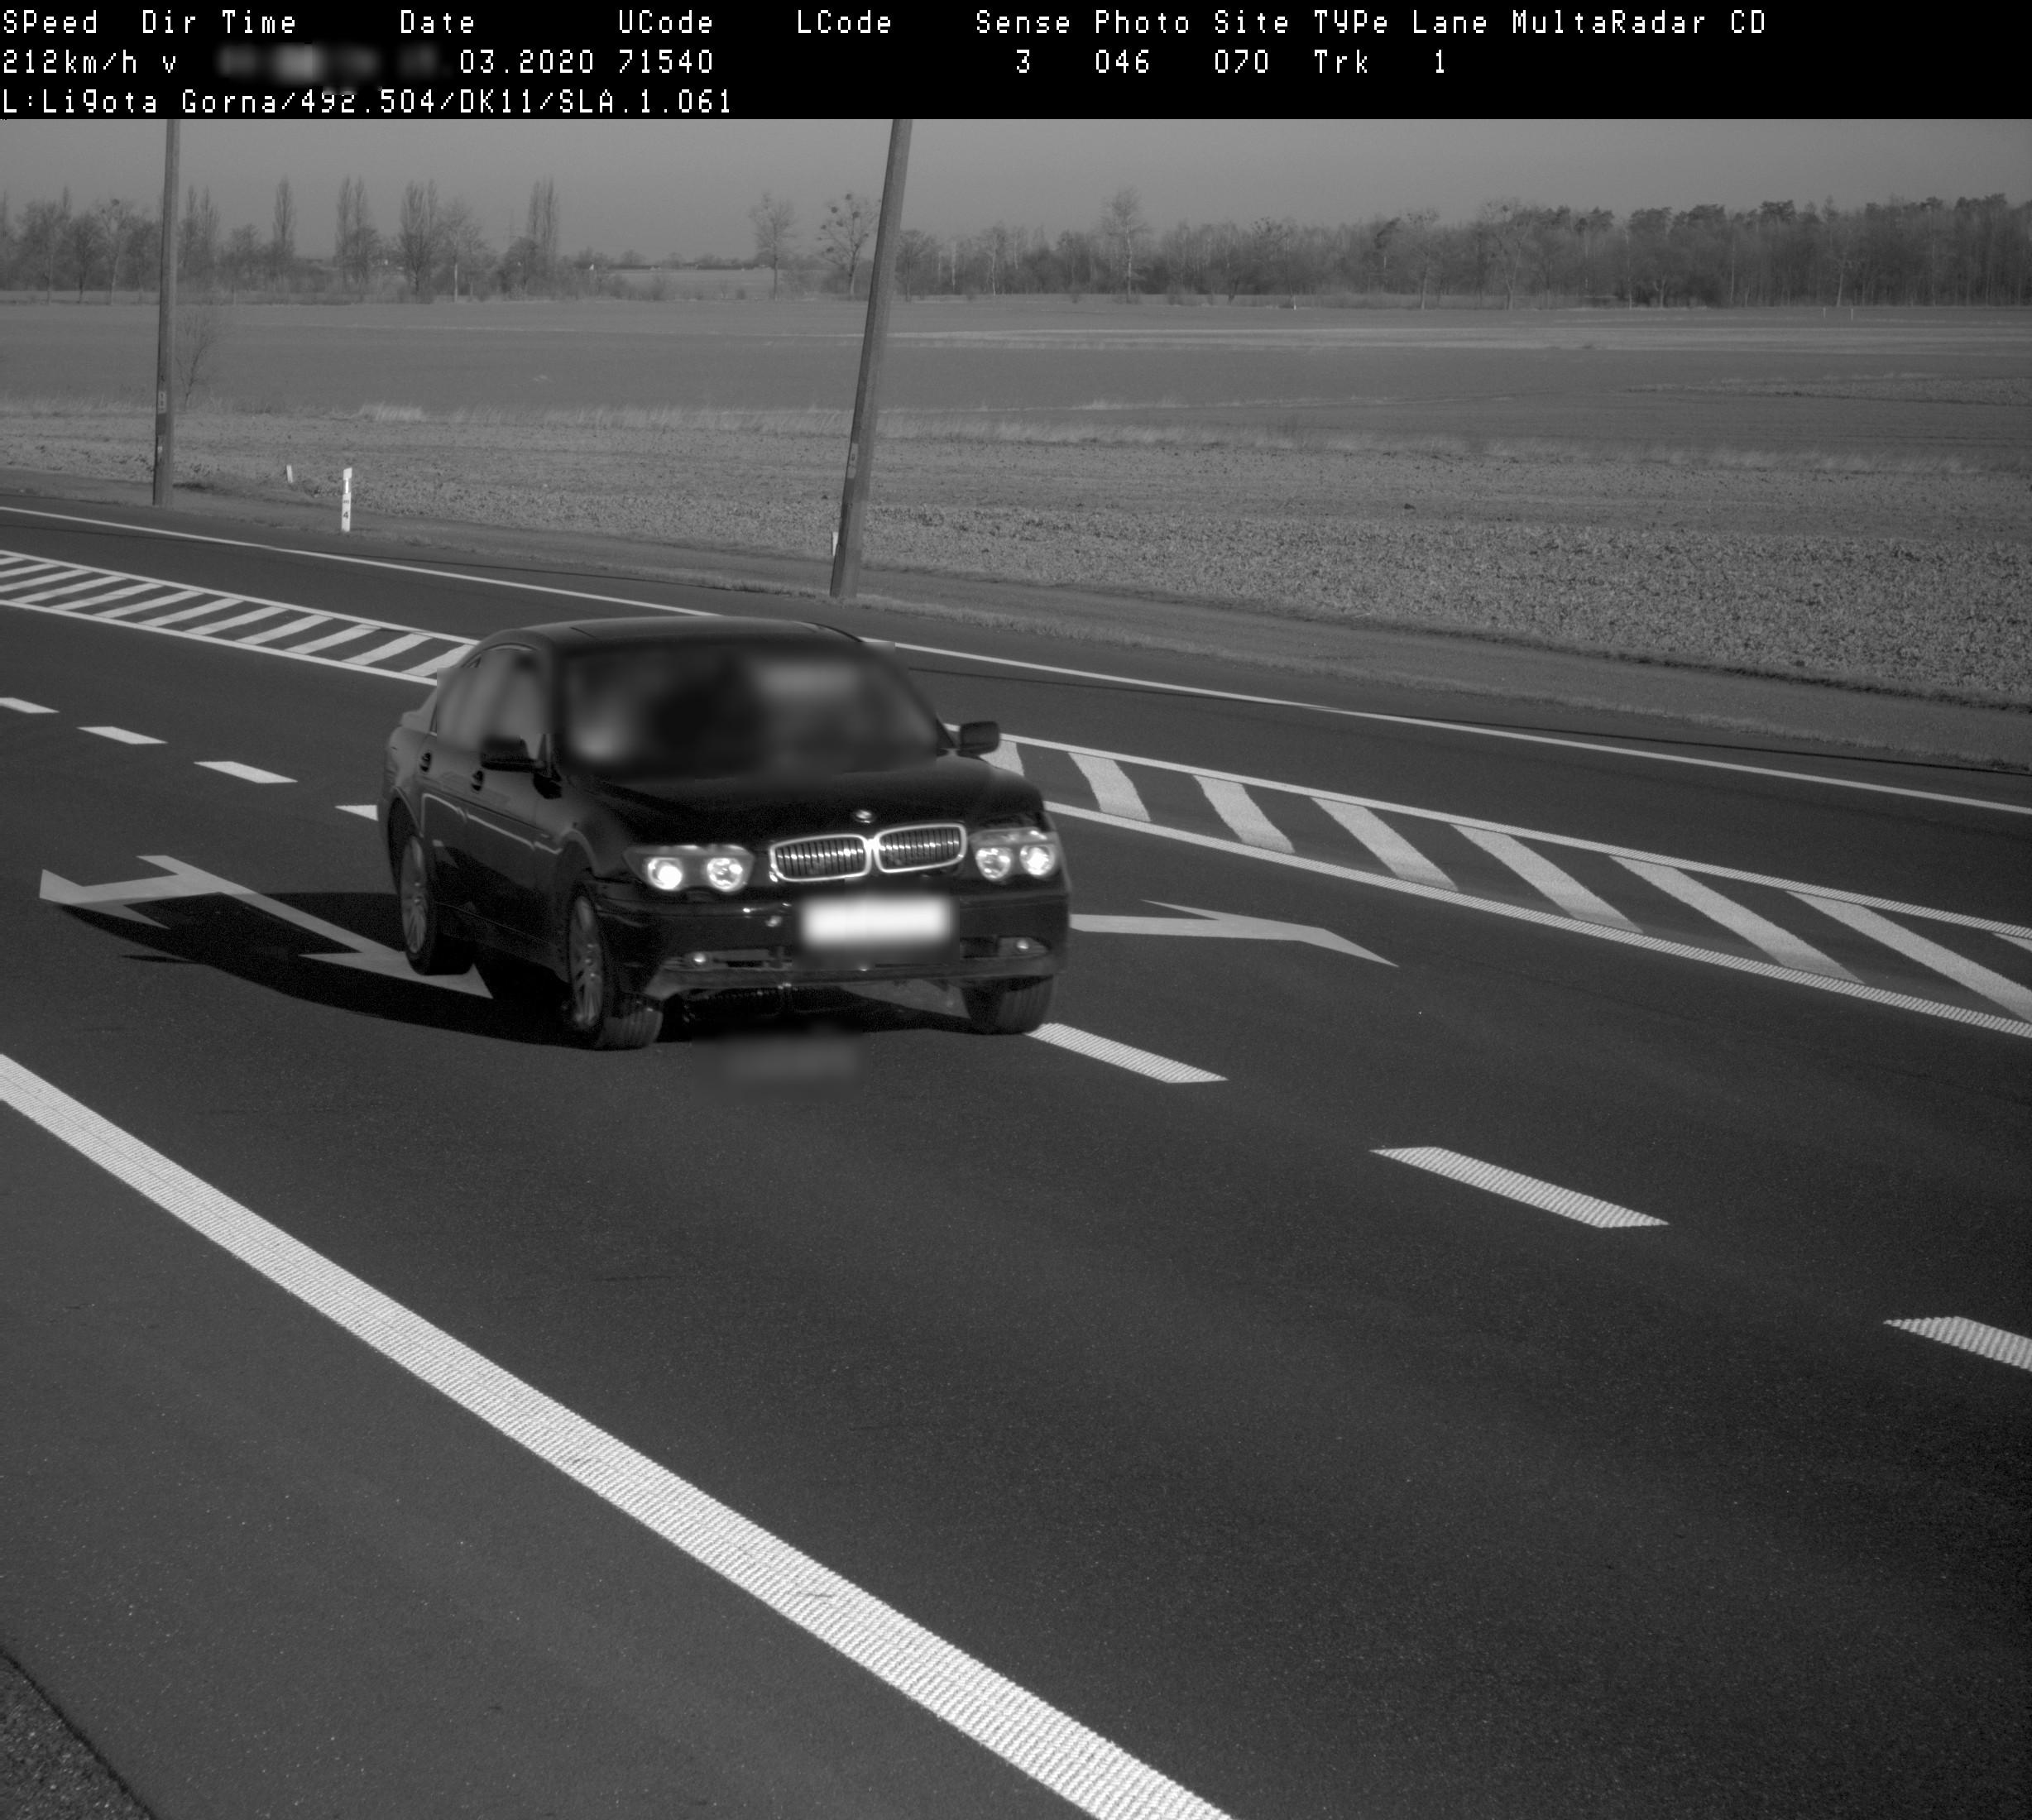 Zdjęcie z fotoradaru dokumentujące naruszenie prędkości przez pojazd osobowy. Samochód jedzie przez miejscowość Ligota Górna z prędkością 212 km/h.